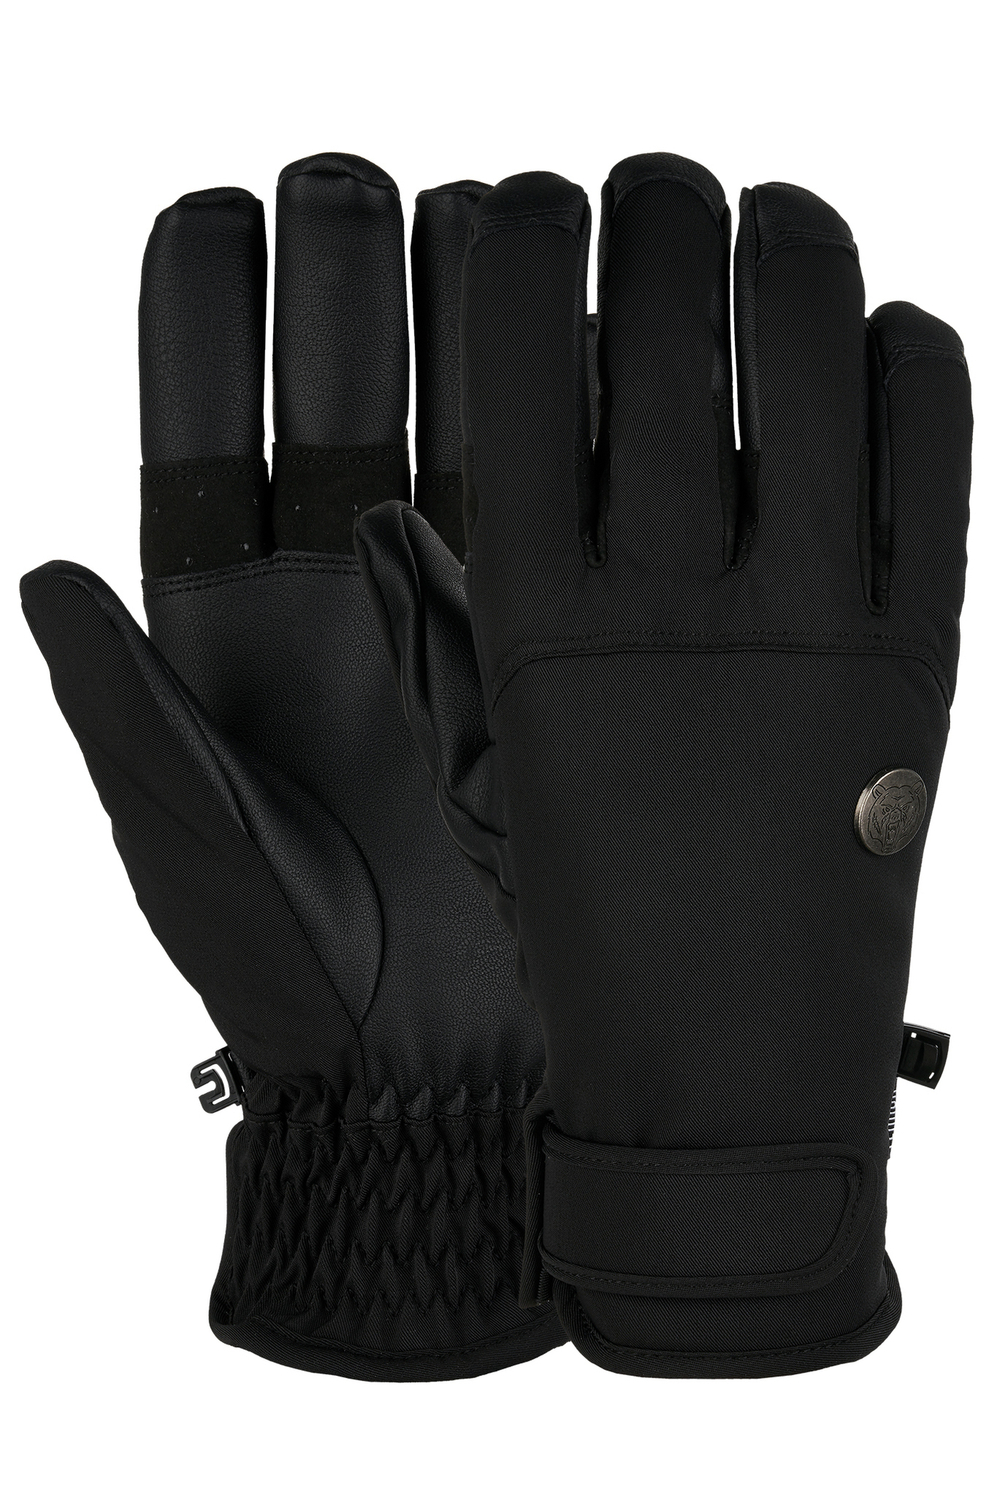 Перчатки TERROR - CREW Gloves (Black)